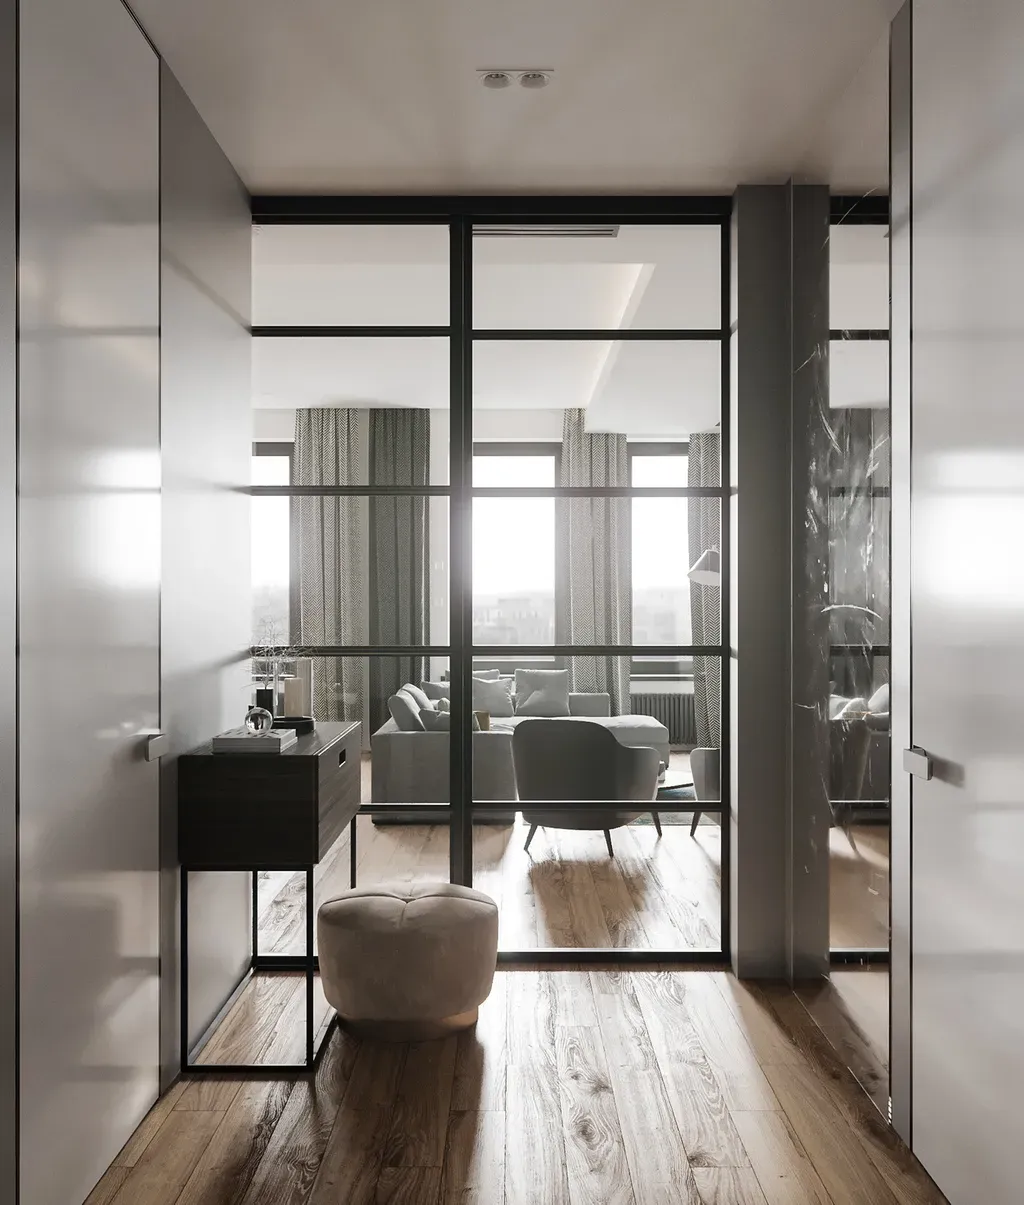 Hành lang - Concept căn hộ - Phong cách Modern số 3  | Space T